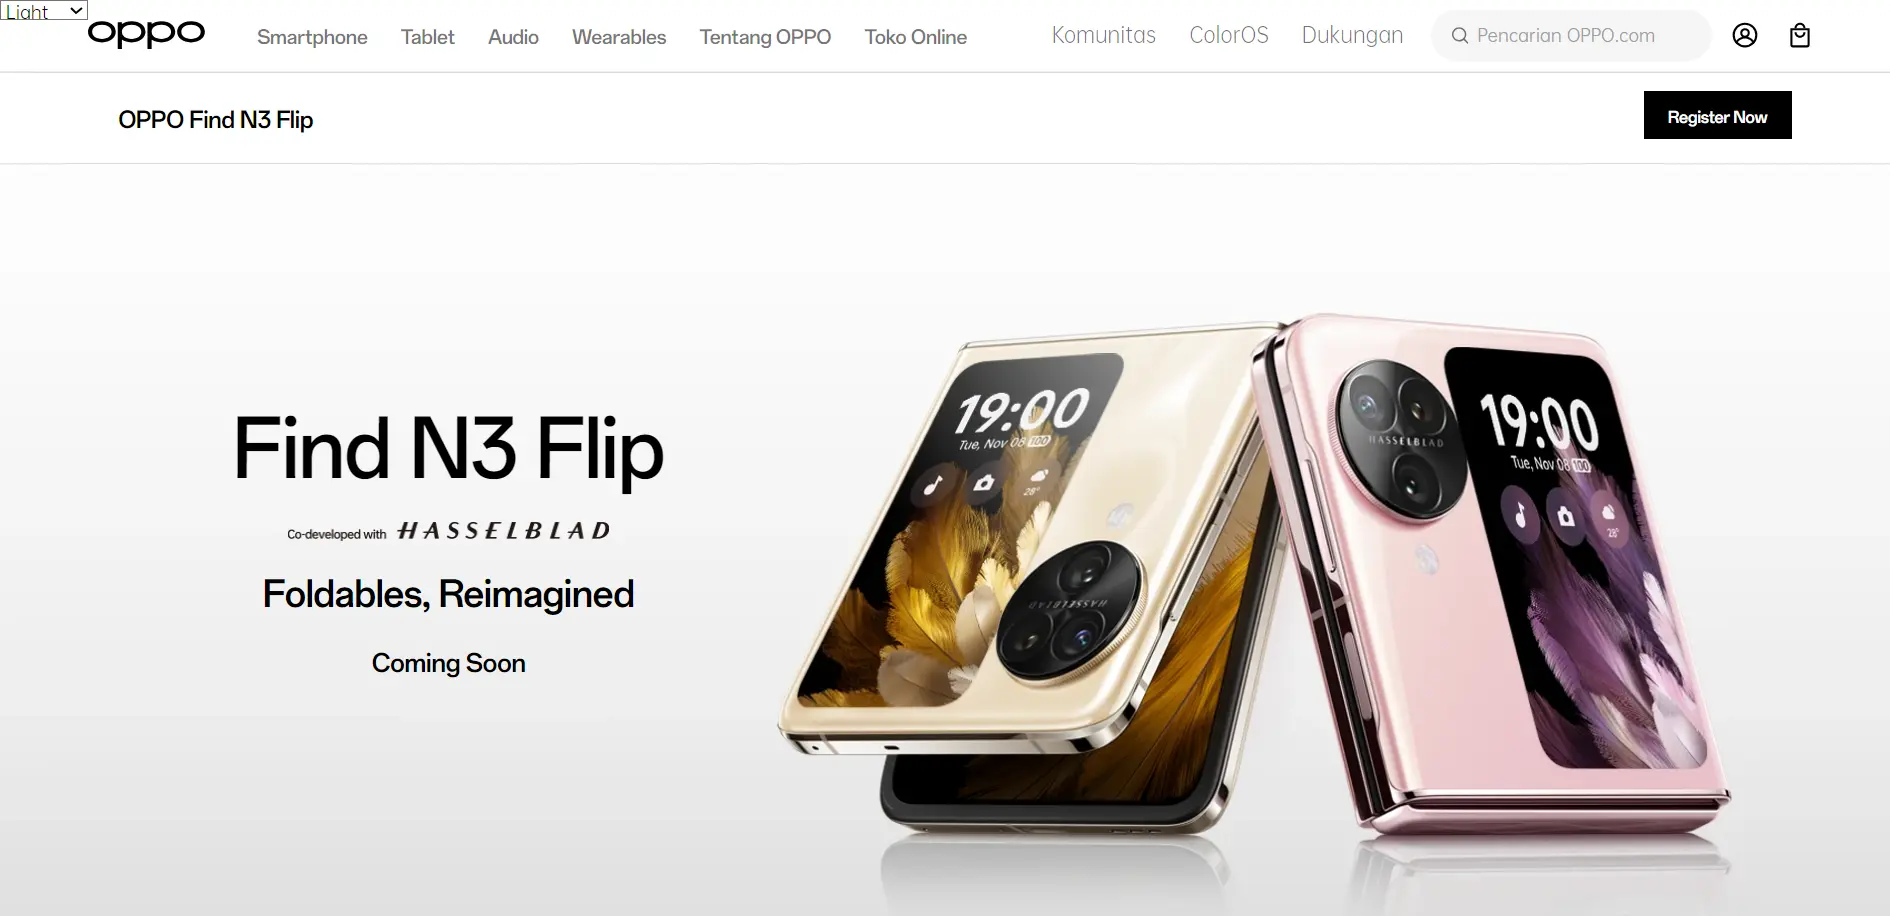 Oppo Find N3 Flip “Coming Soon” ke Indonesia!